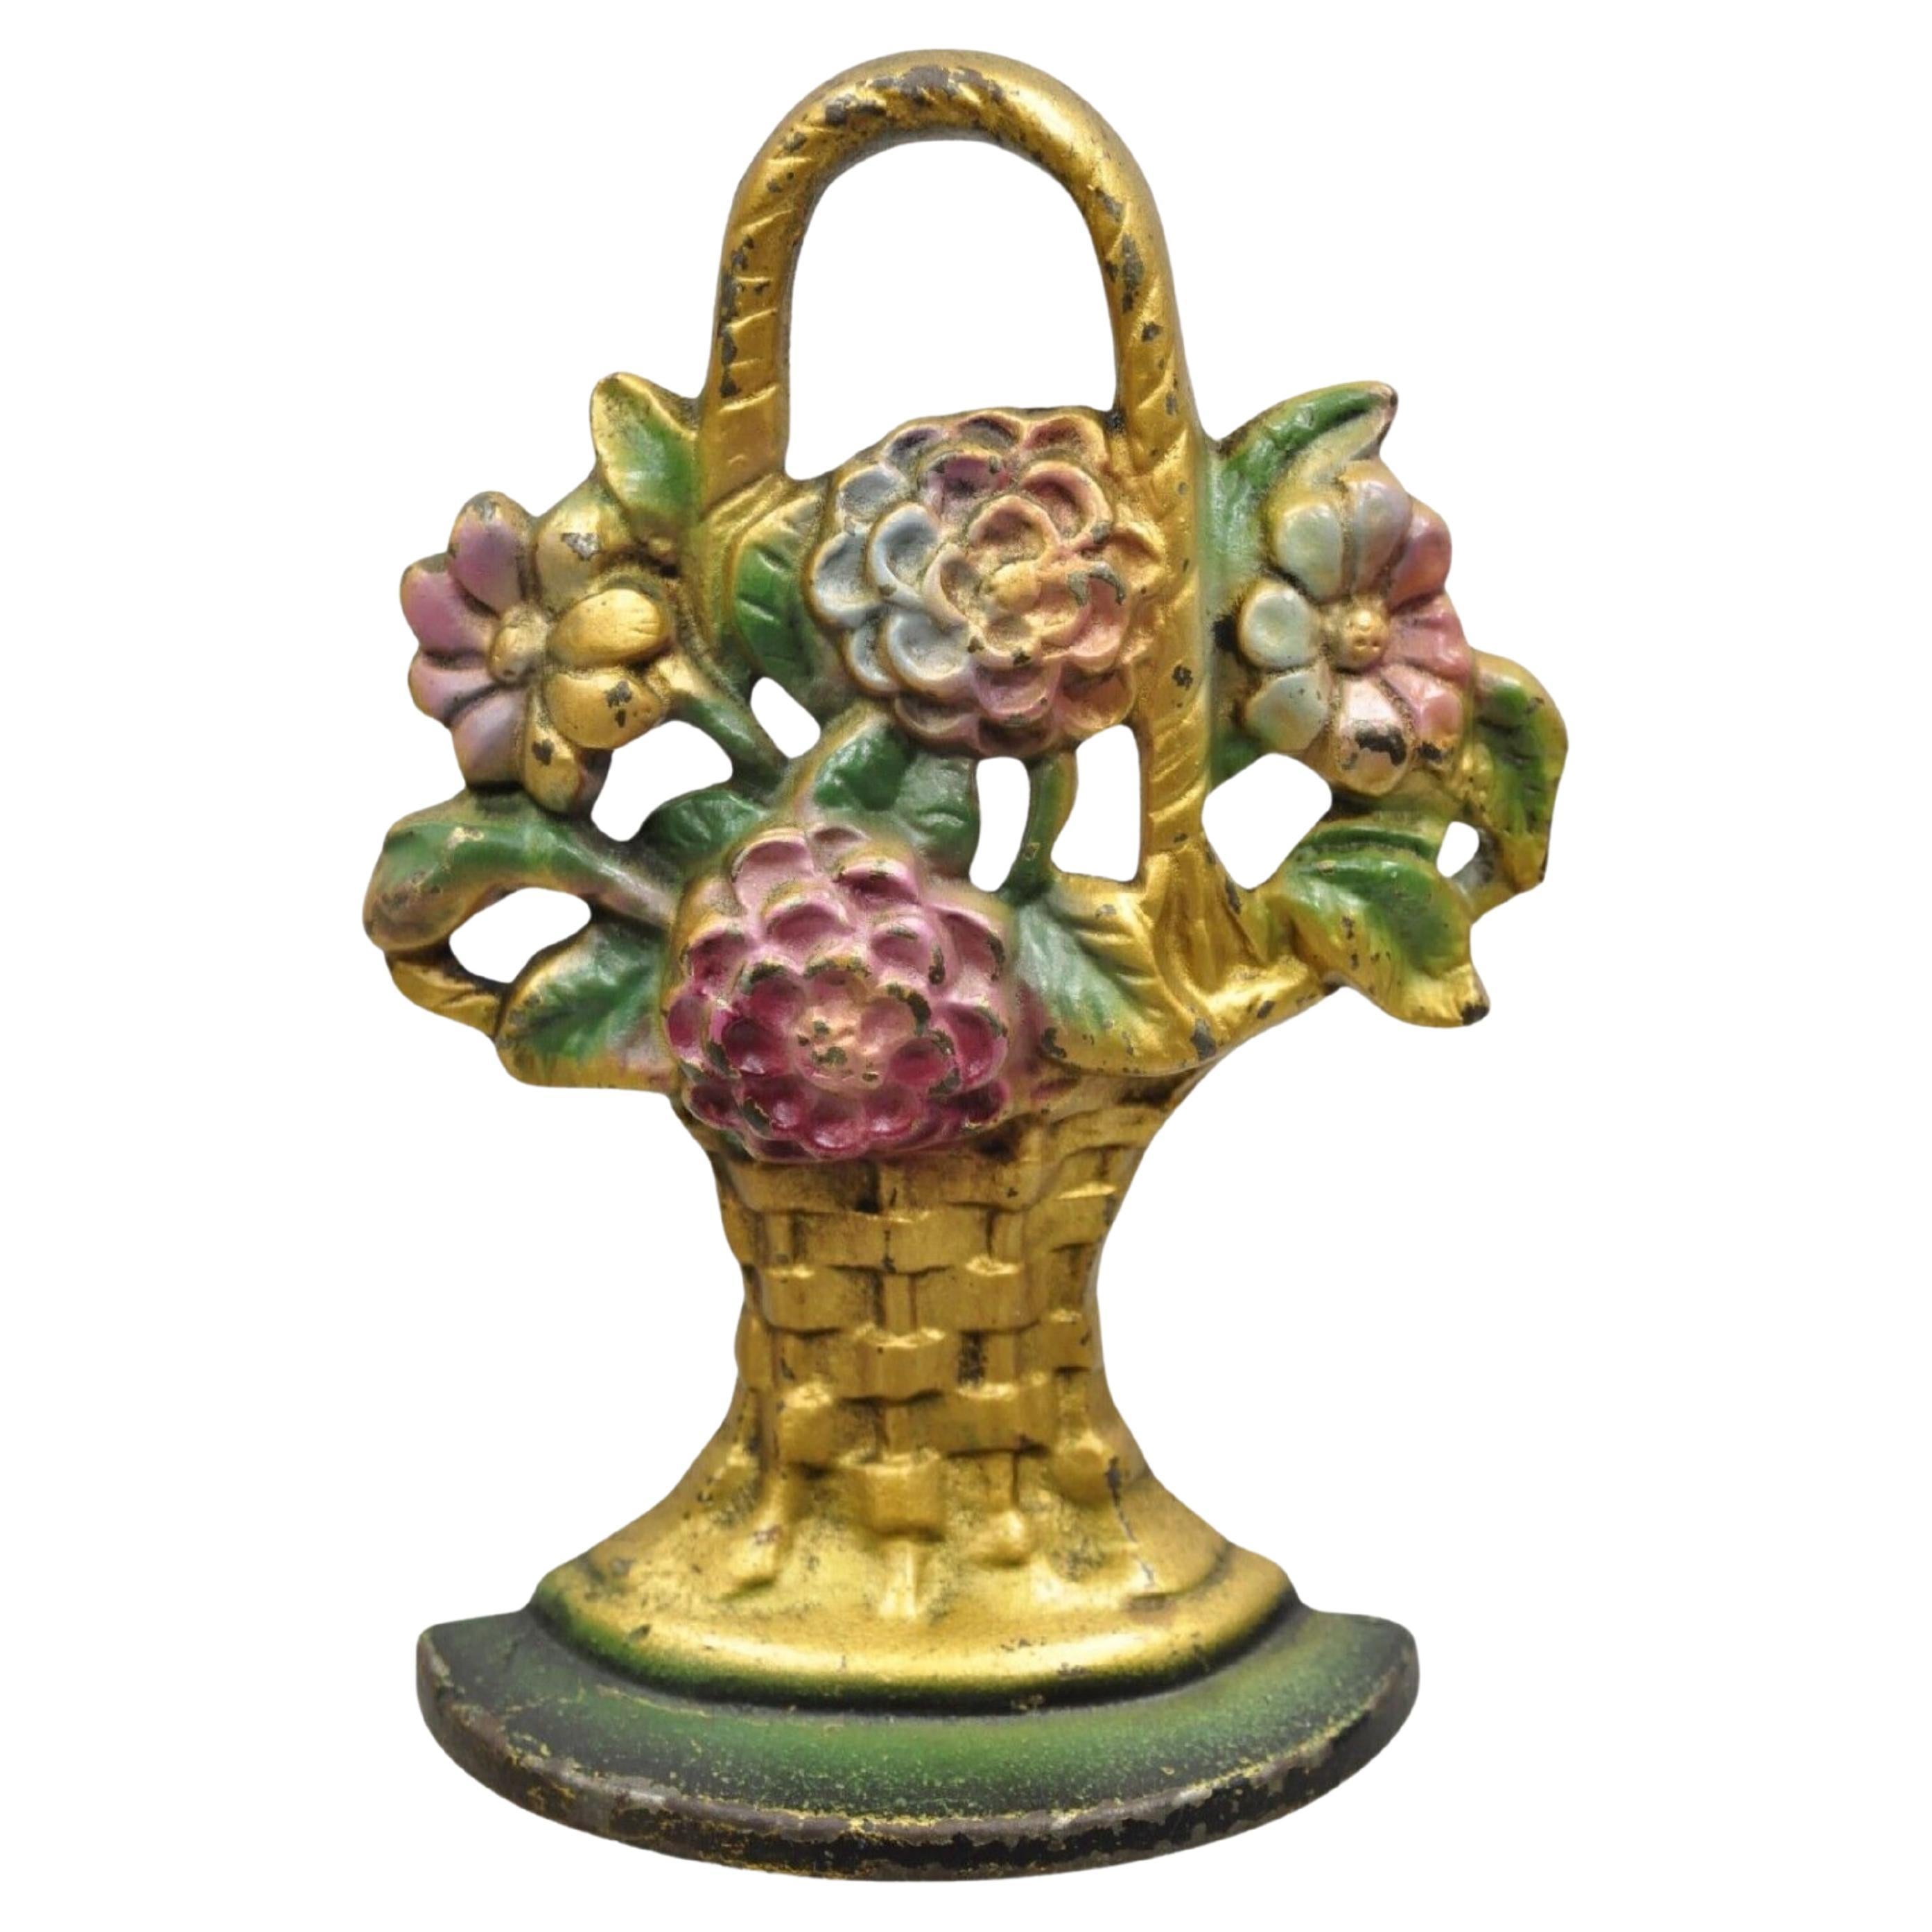 Antique fermoir de porte victorien en fonte représentant un bouquet de fleurs figuratif peint en forme de panier en or